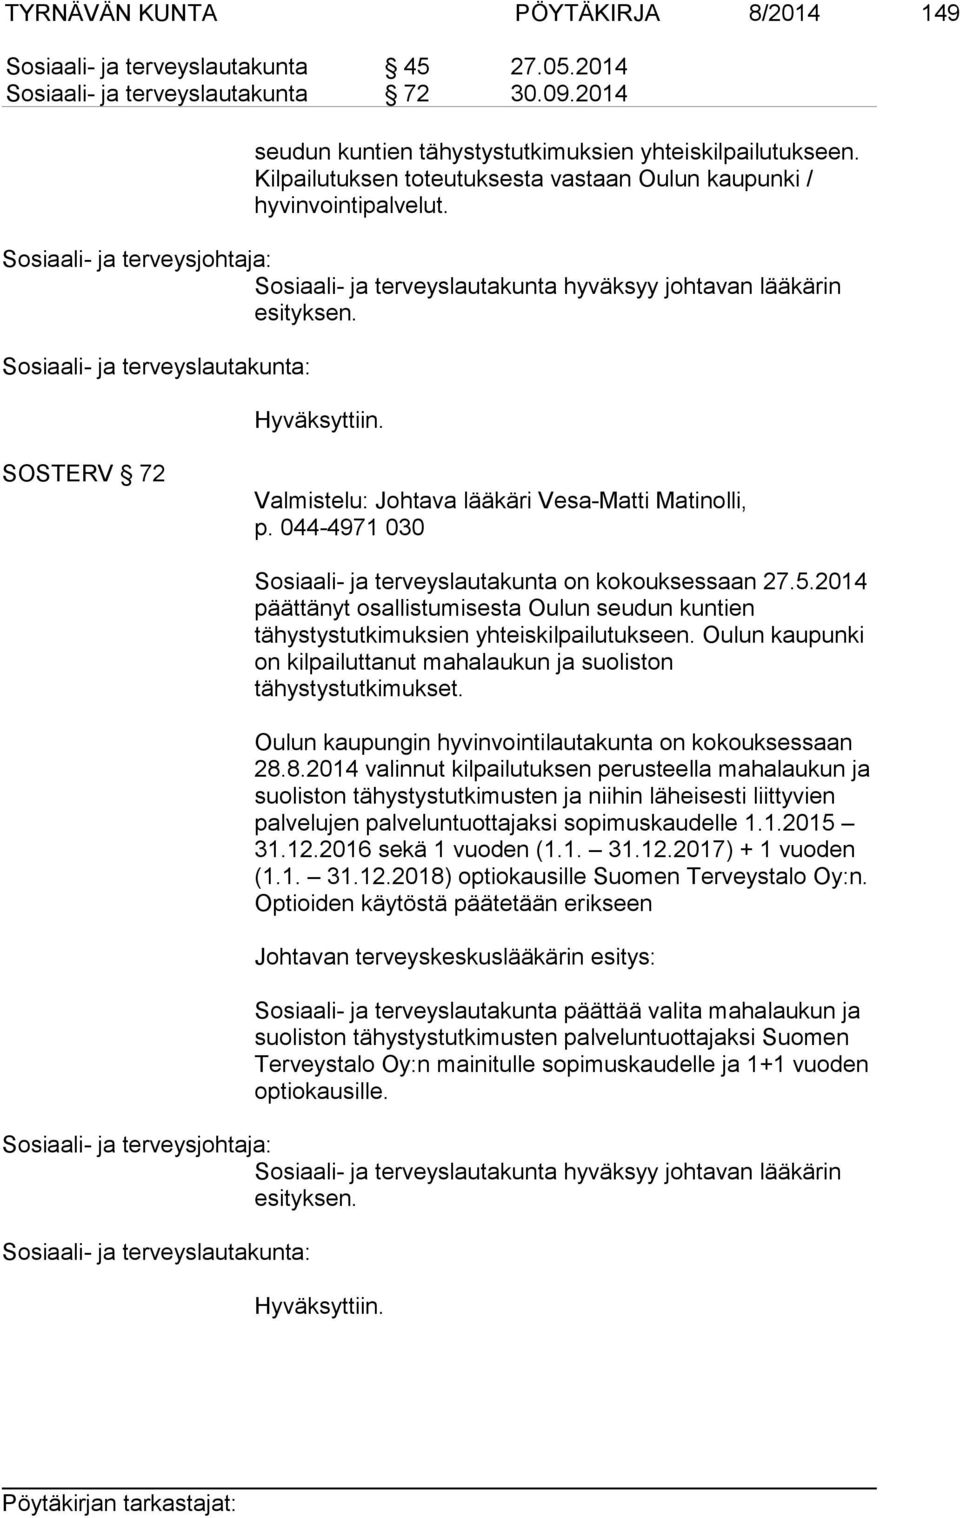 SOSTERV 72 Valmistelu: Johtava lääkäri Vesa-Matti Matinolli, p. 044-4971 030 Sosiaali- ja terveyslautakunta on kokouksessaan 27.5.